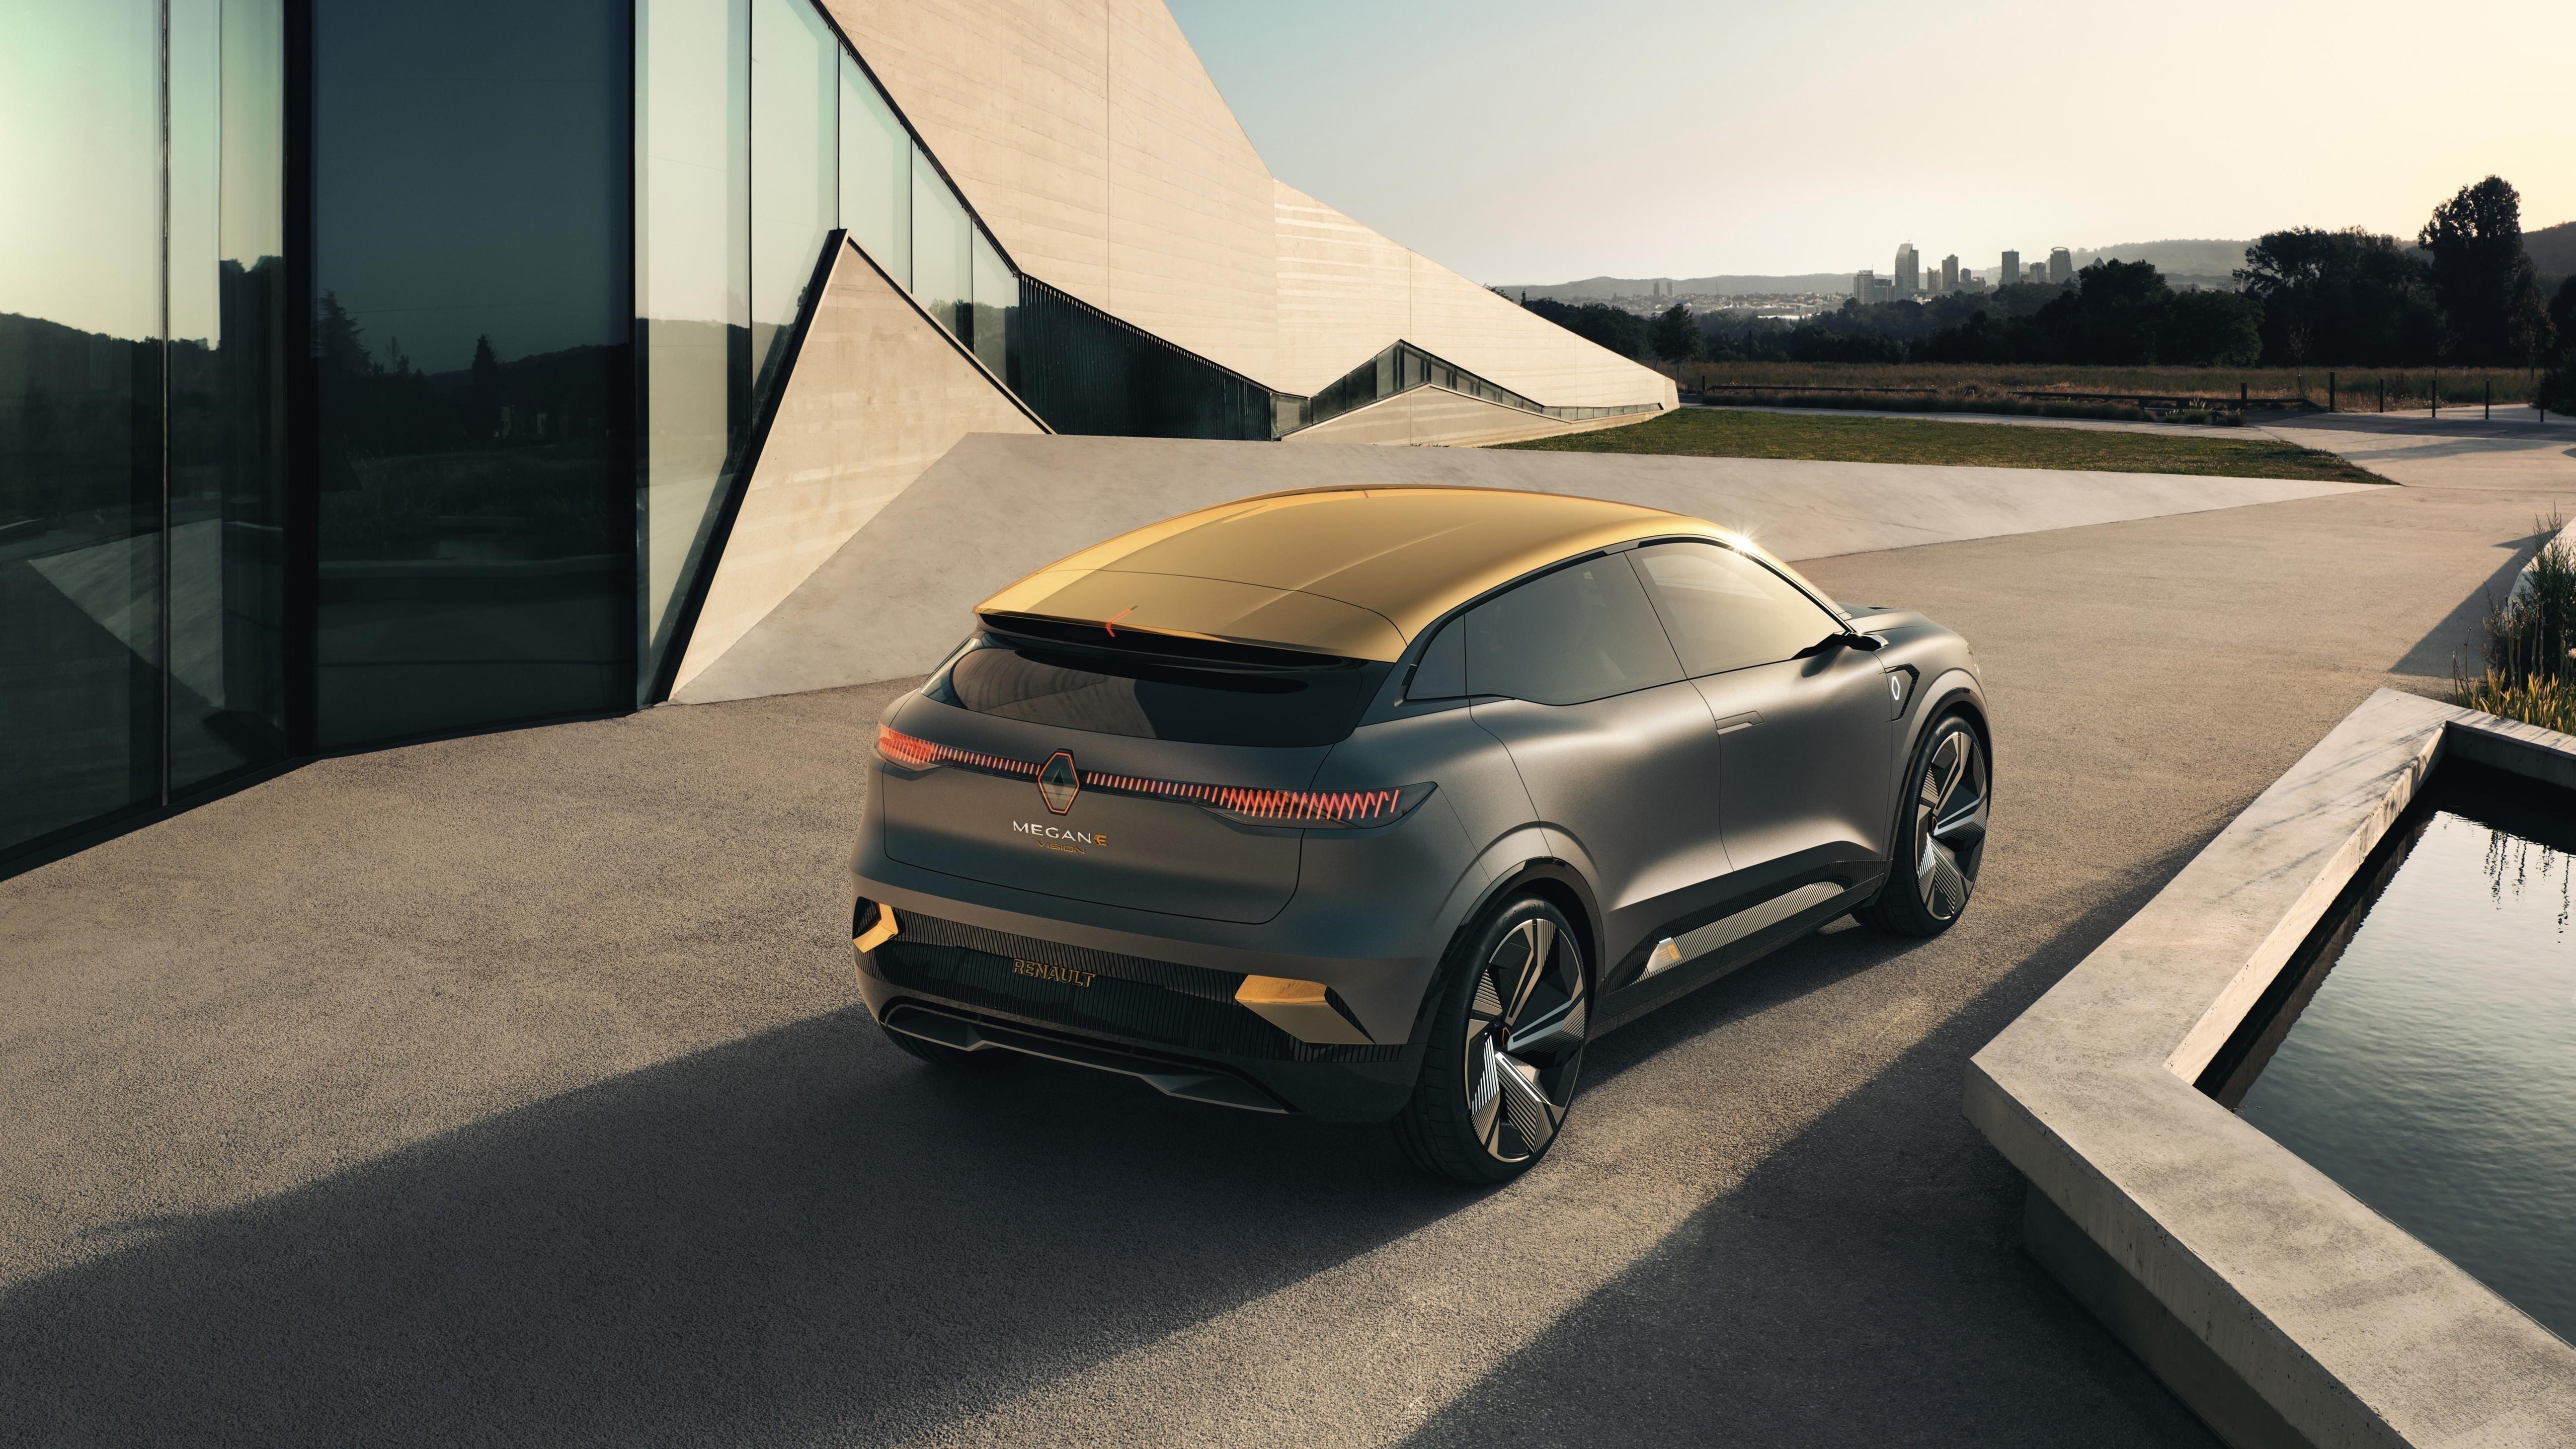 Renault megane vision 2020 2 автомобиля обои скачать